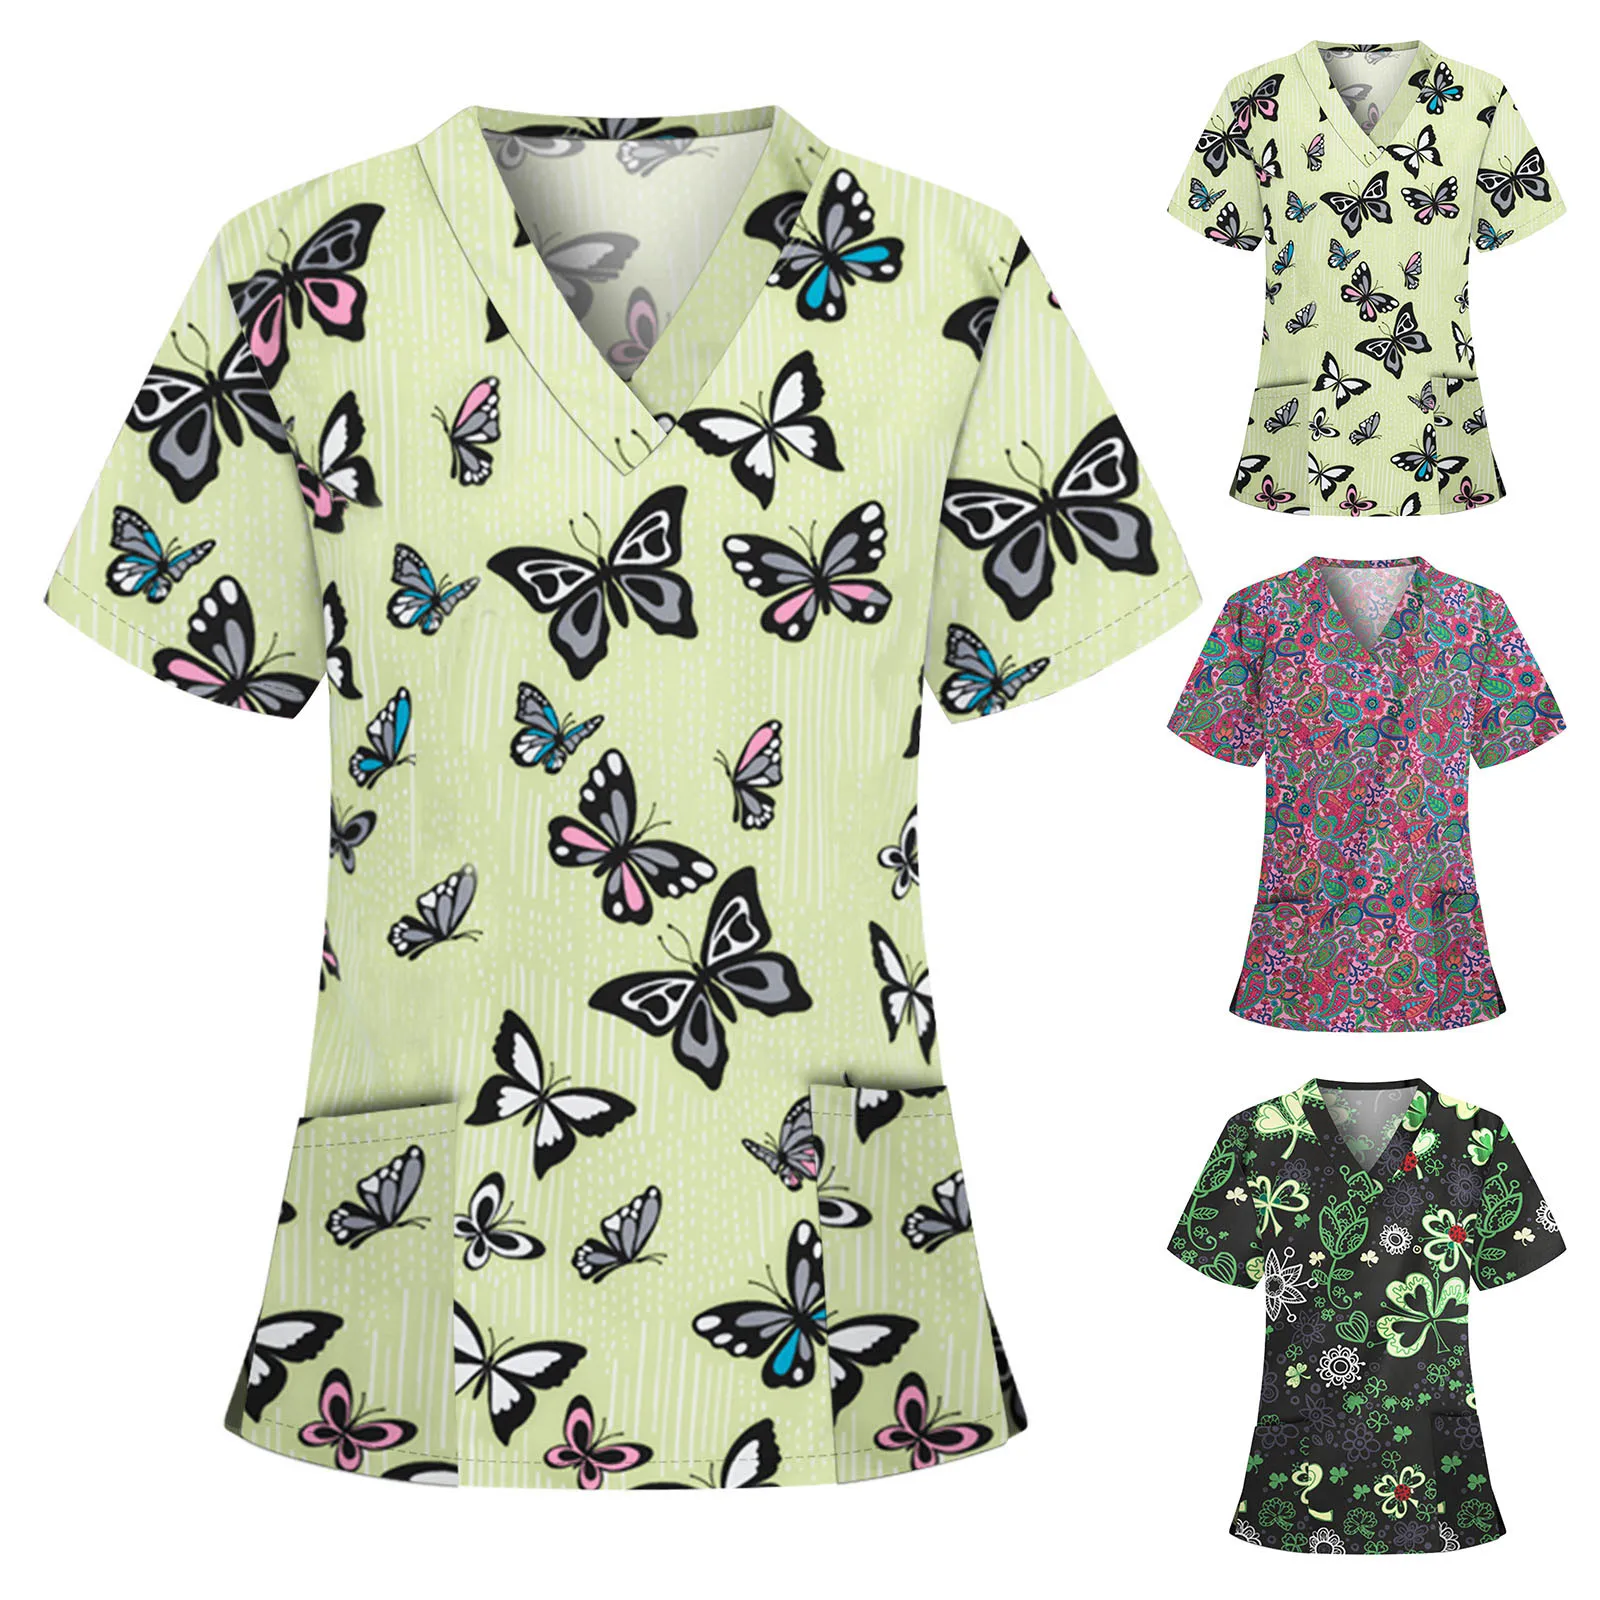 

Комбинезон для медсестры, скрабы, Женские топы с коротким рукавом и V-образным вырезом, с цветочным принтом бабочки, униформа медсестры, блуз...